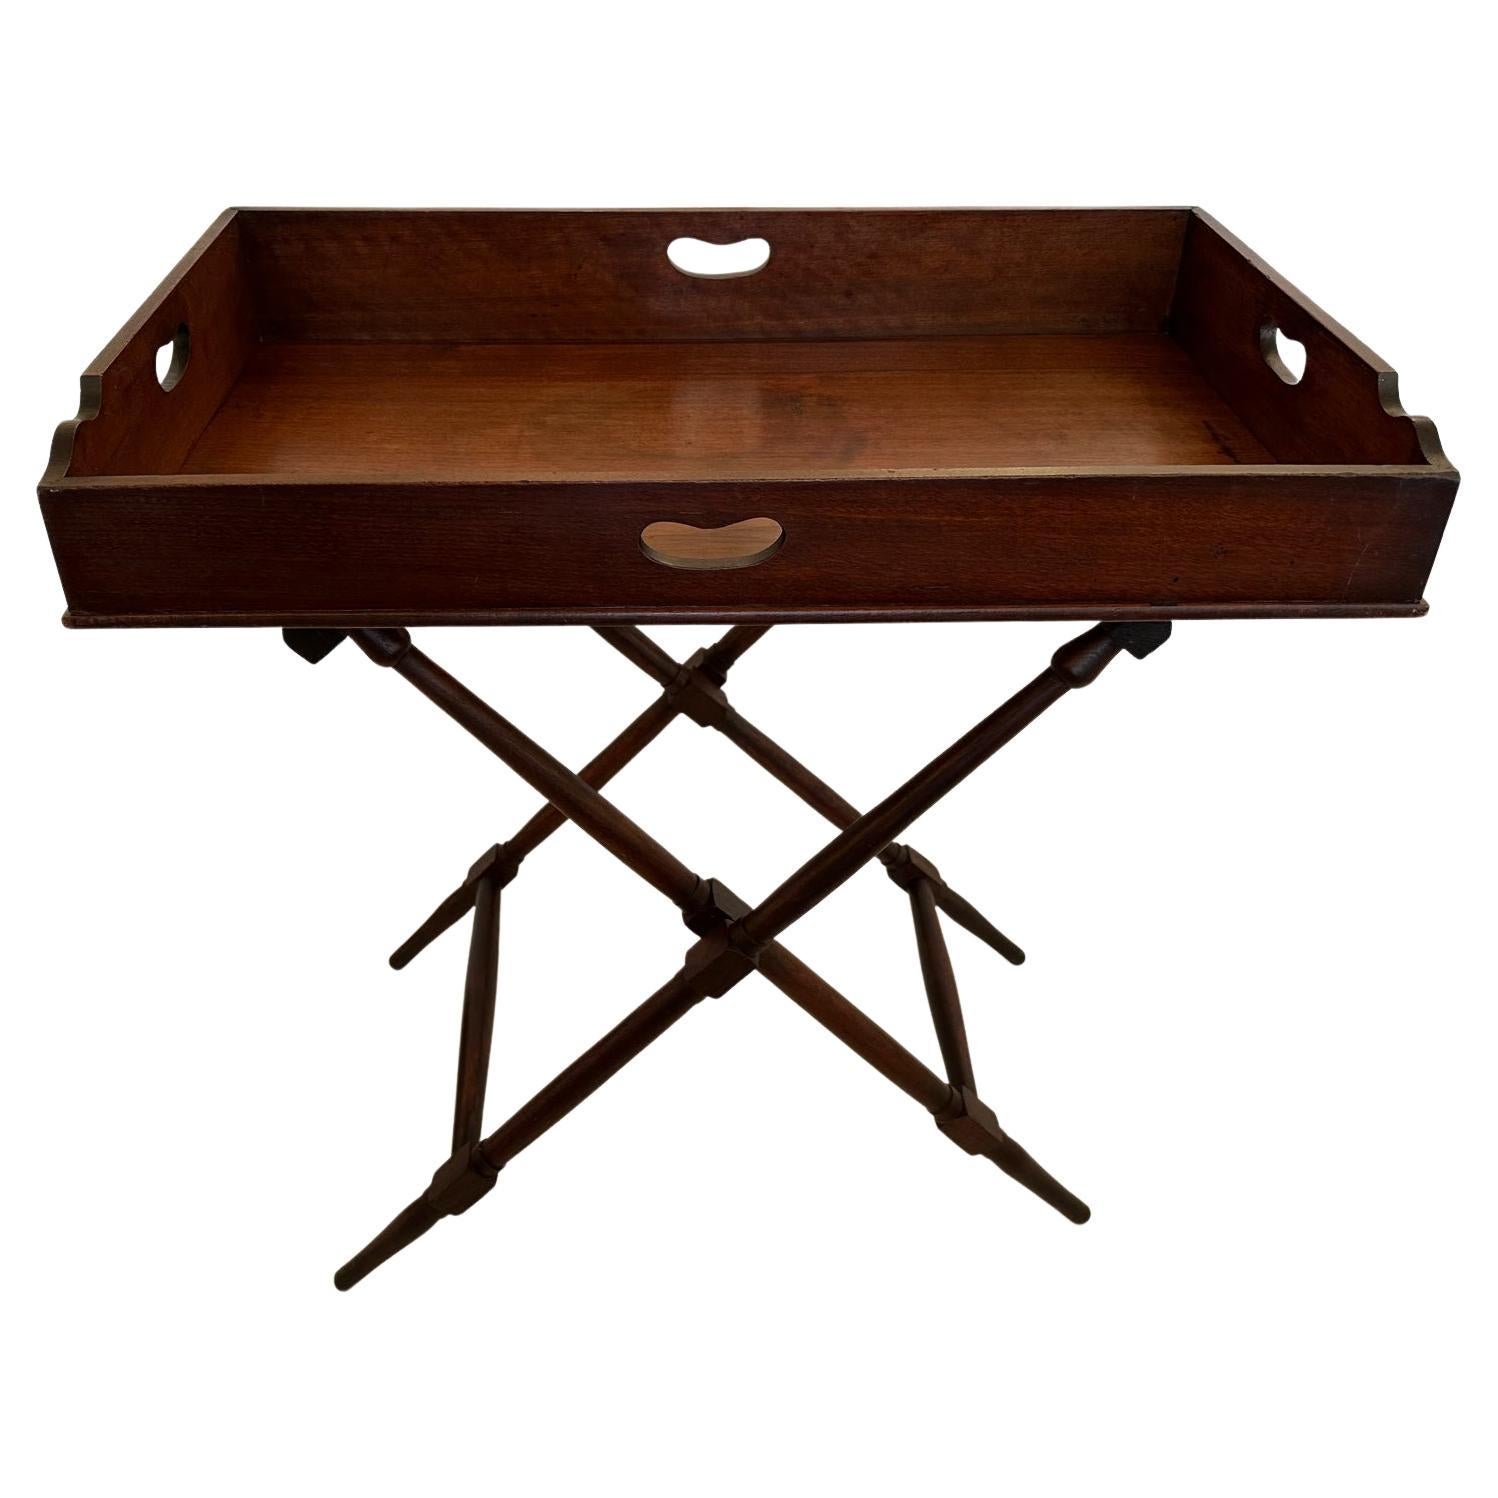 Butlers Tablett-Tisch aus Mahagoni auf klappbarem Ständer